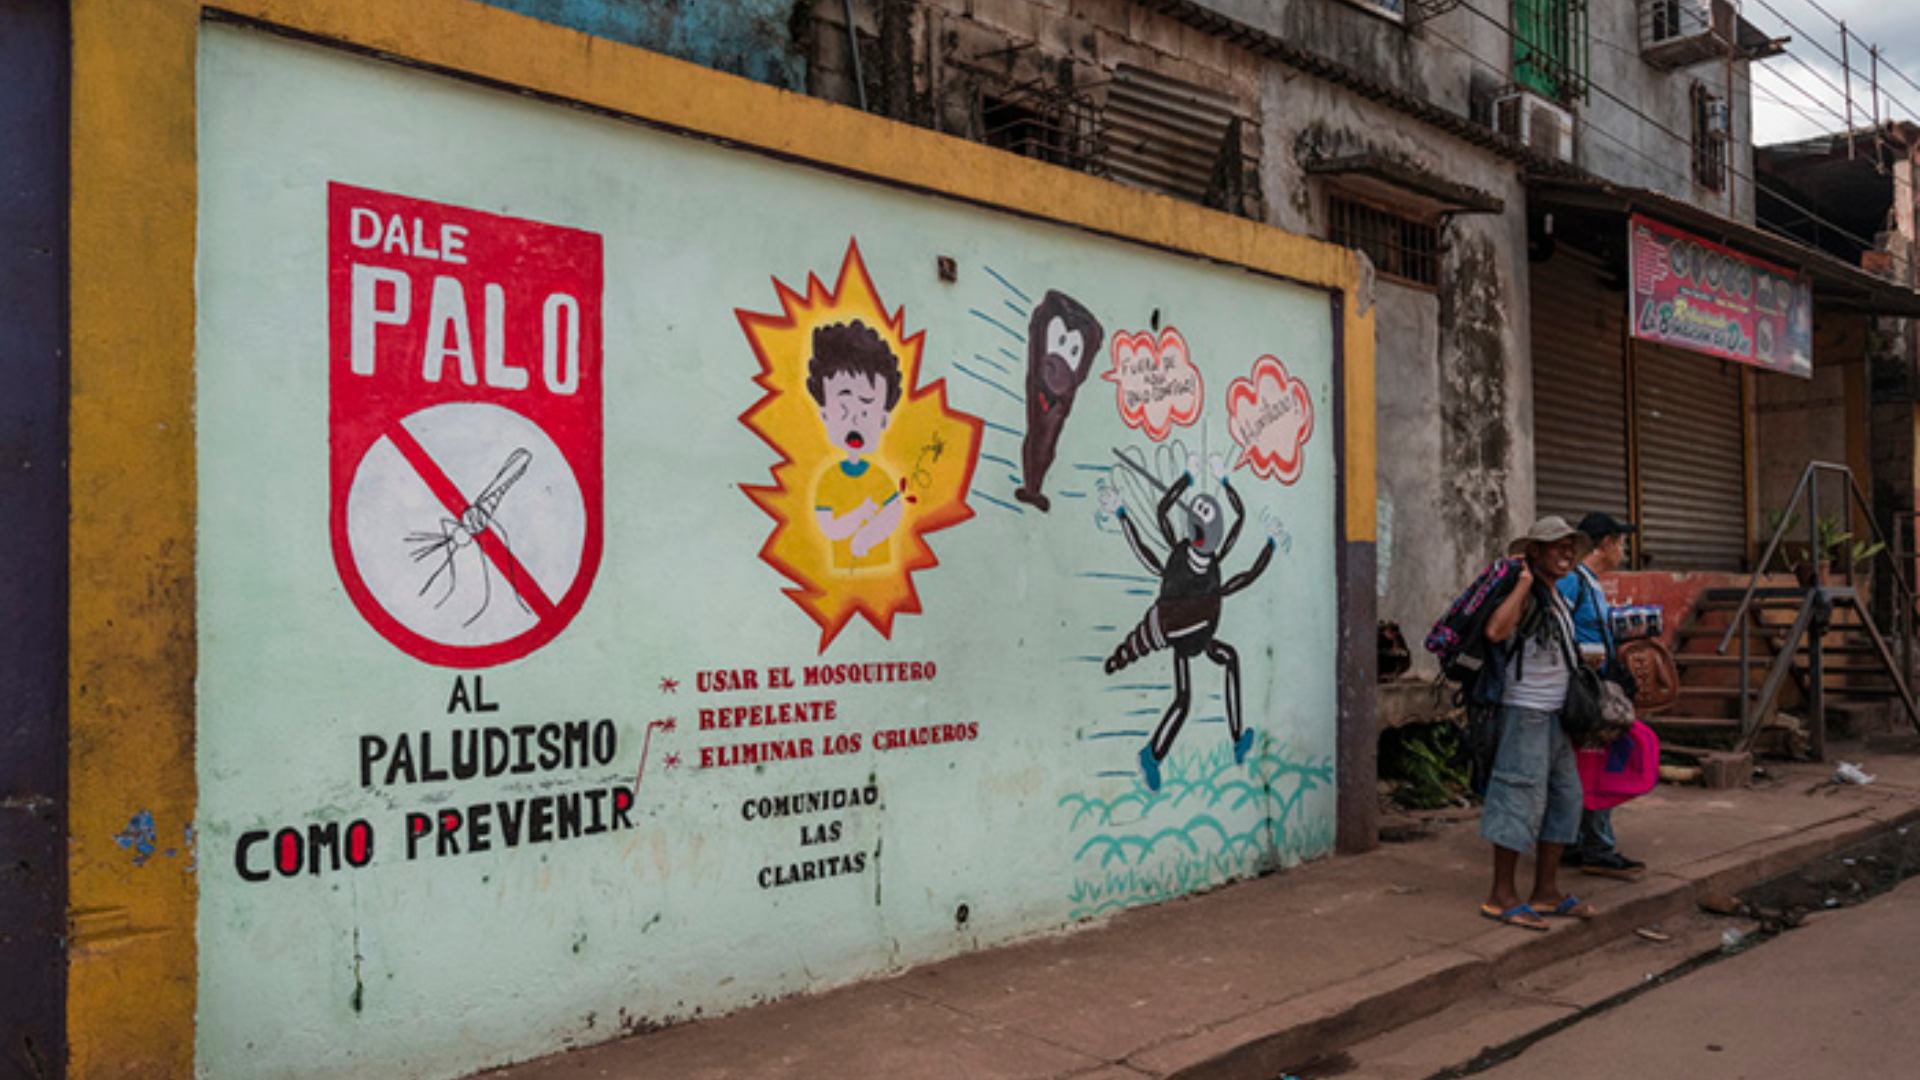 La malaria crece sin control en Venezuela por el fracaso del sistema de salud